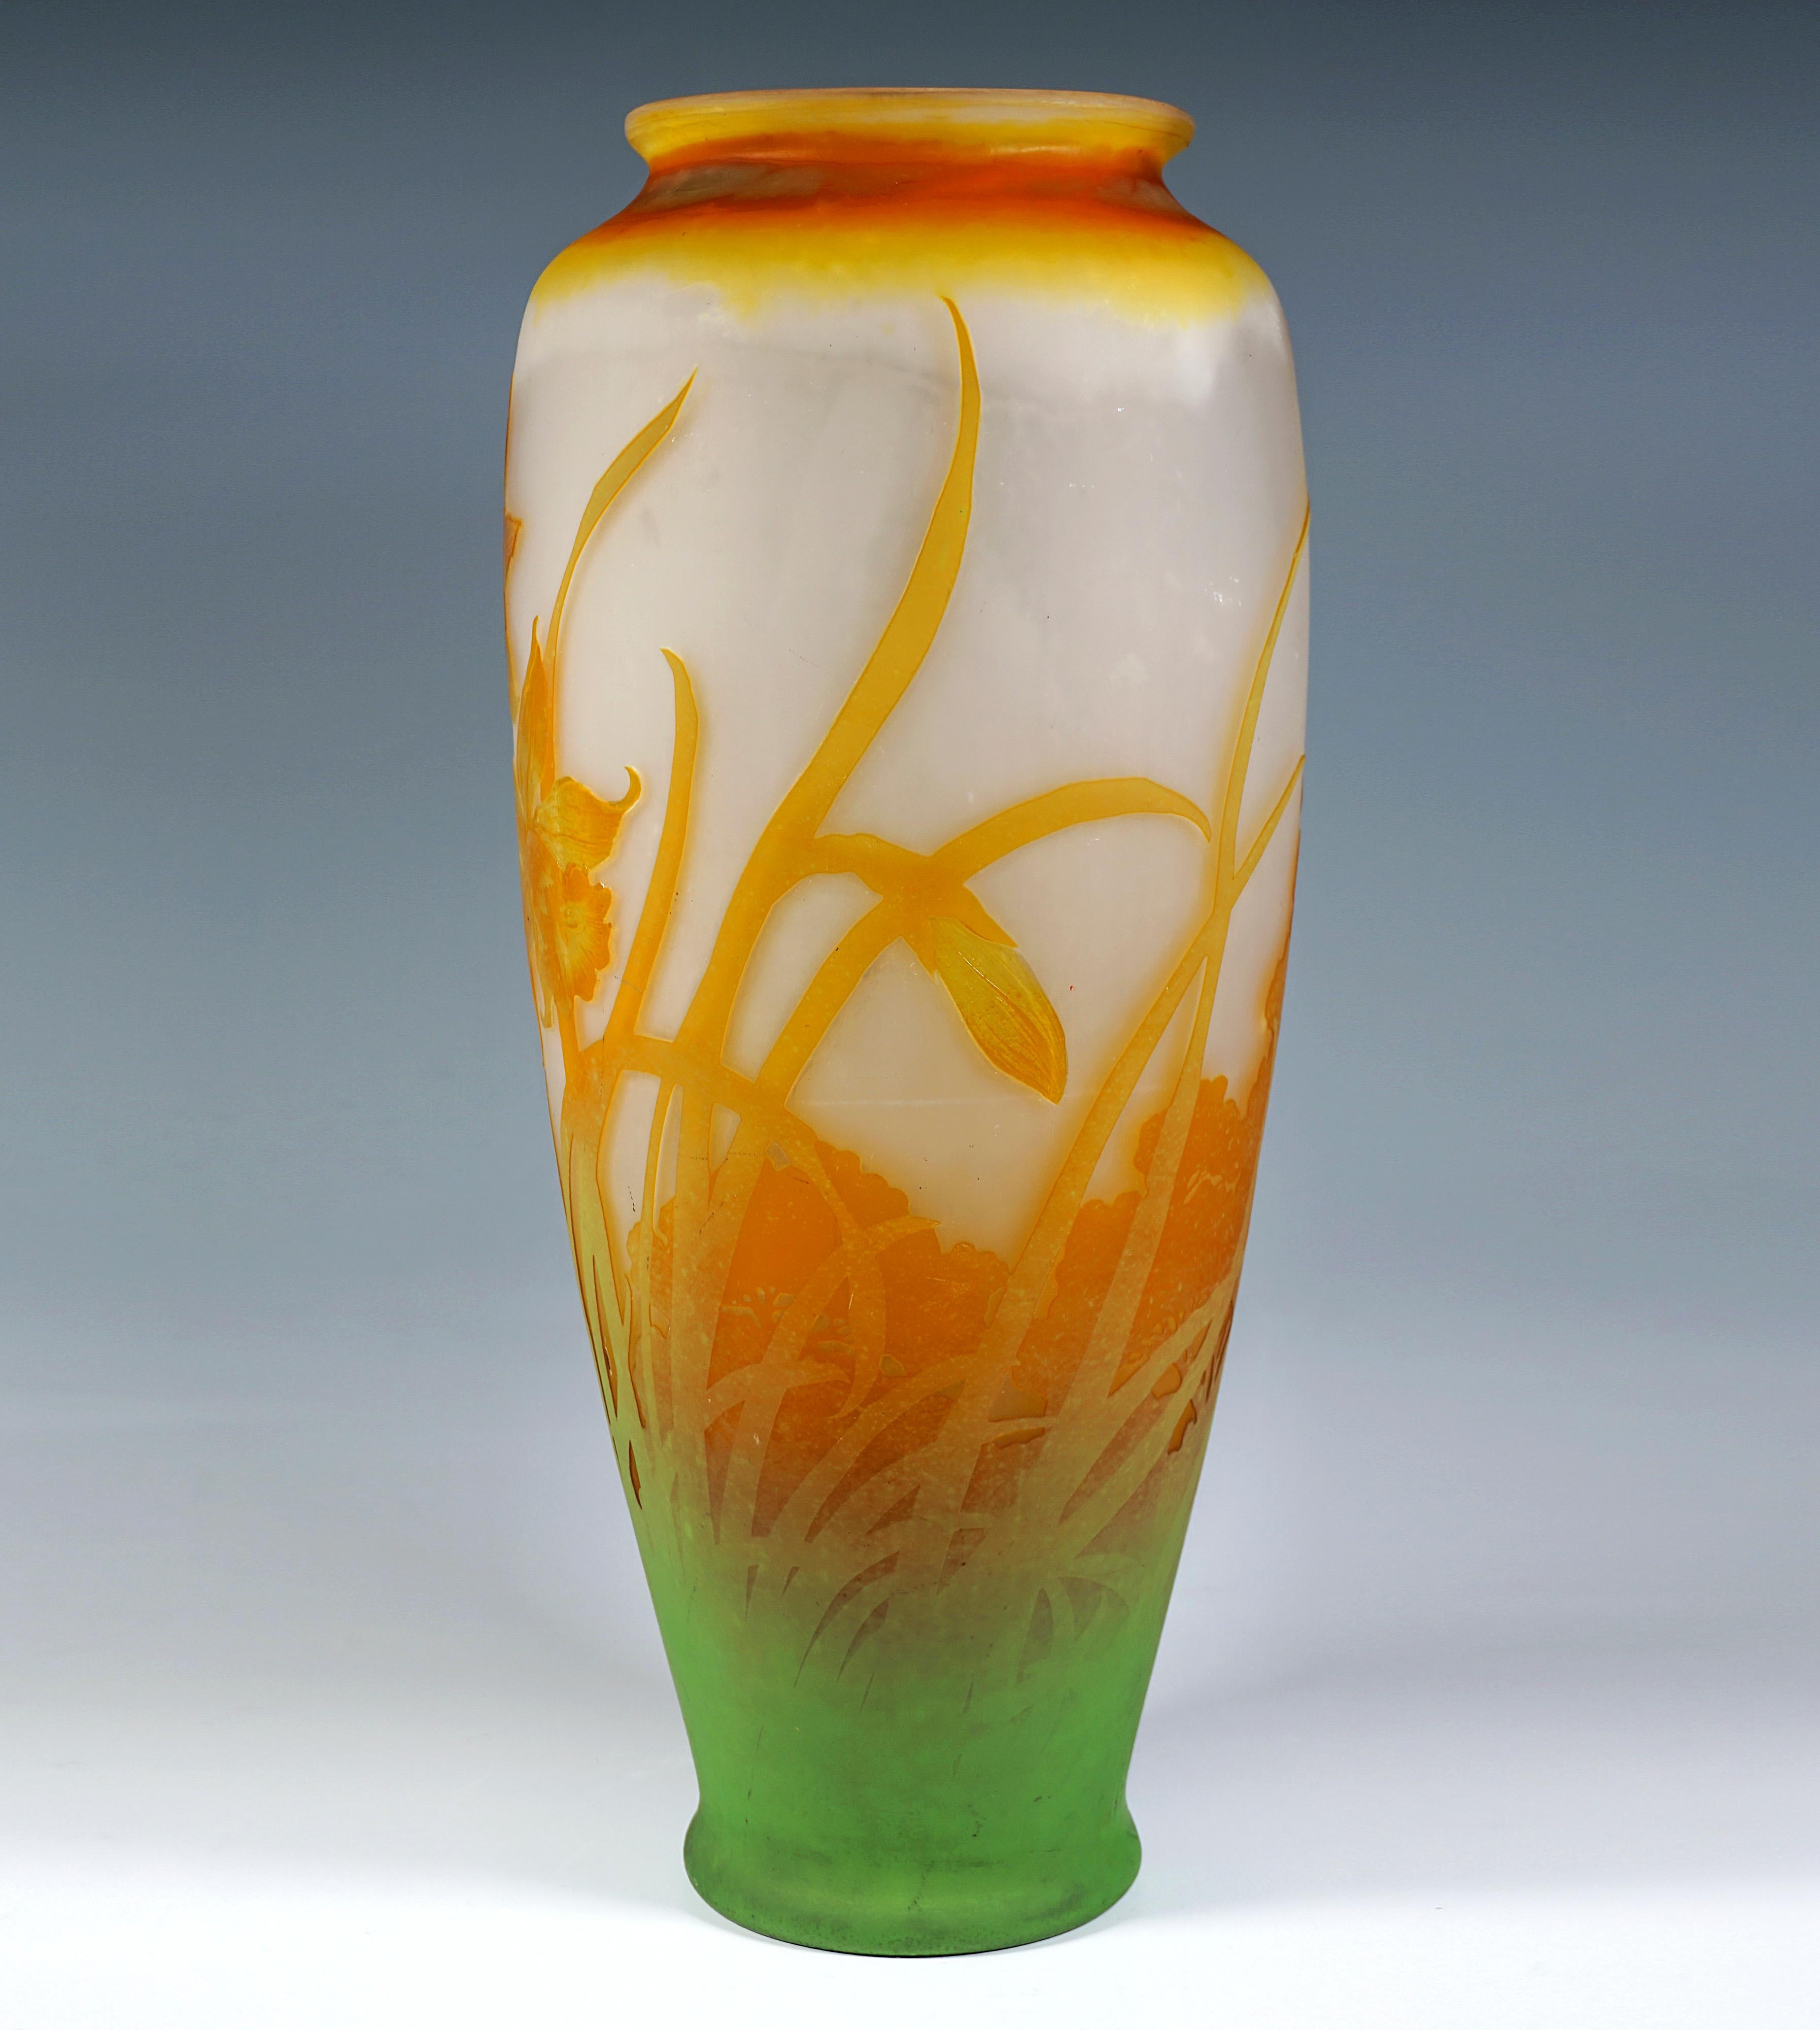 Corps de vase de forme balustre sur une base affleurante légèrement évasée avec une paroi bulbeuse s'élargissant vers le haut, sur des épaules en pente douce un rétrécissement pour former une courte pièce de col avec un bord légèrement évasé, verre